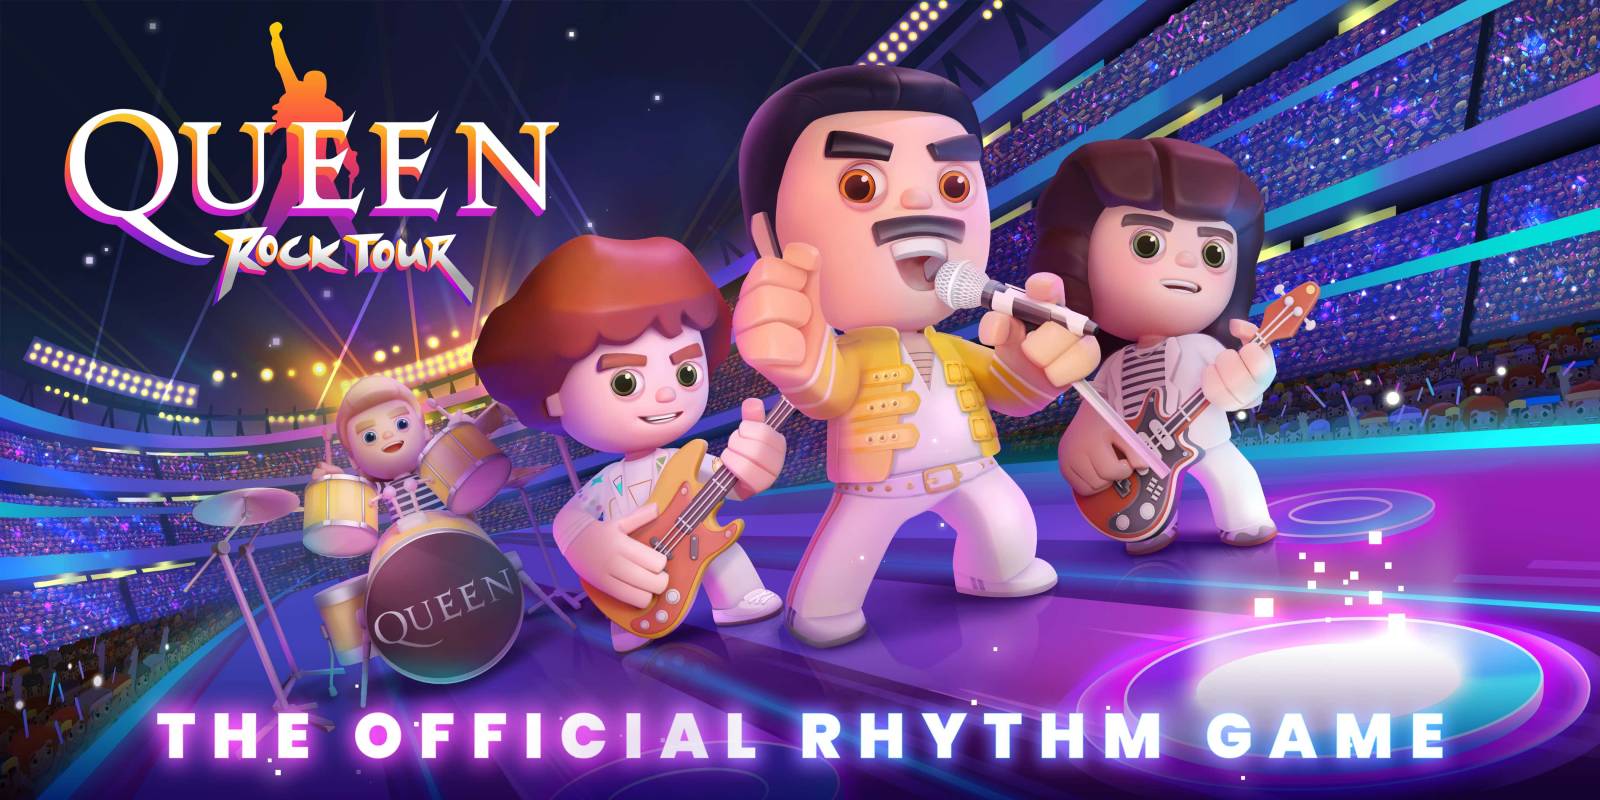 Queen vydali vlastní hru, fanouškům nabízí nejúžasnější kapelní momenty a exkluzivní vhled do archivů formace